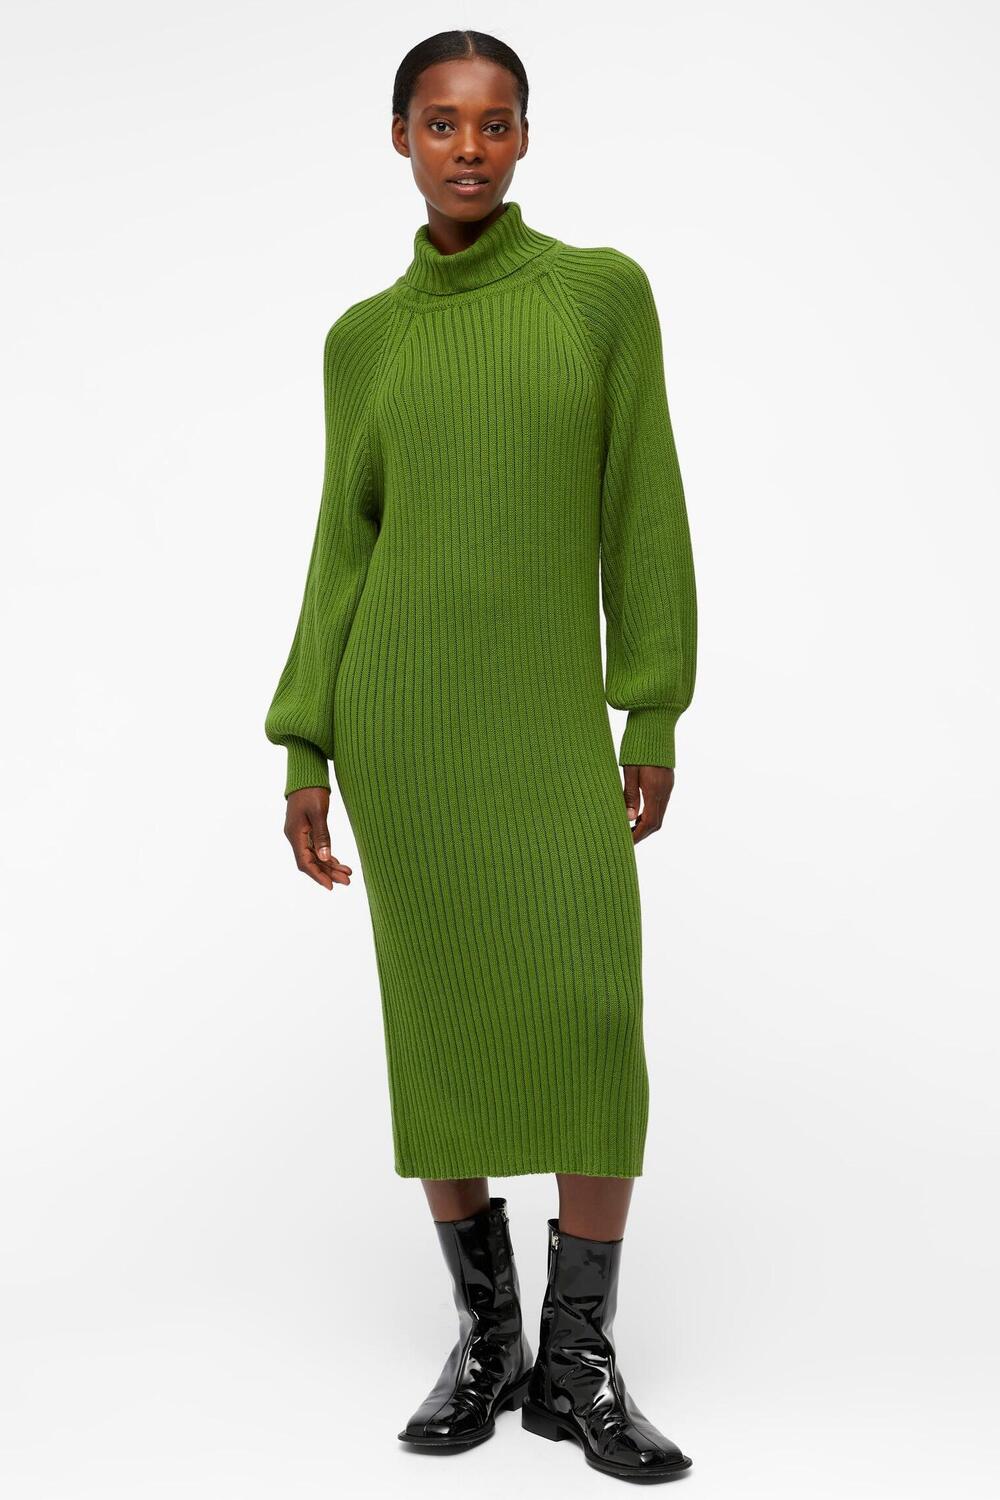 objline l/s knit dress rep 23040386 object jurk artichoke green